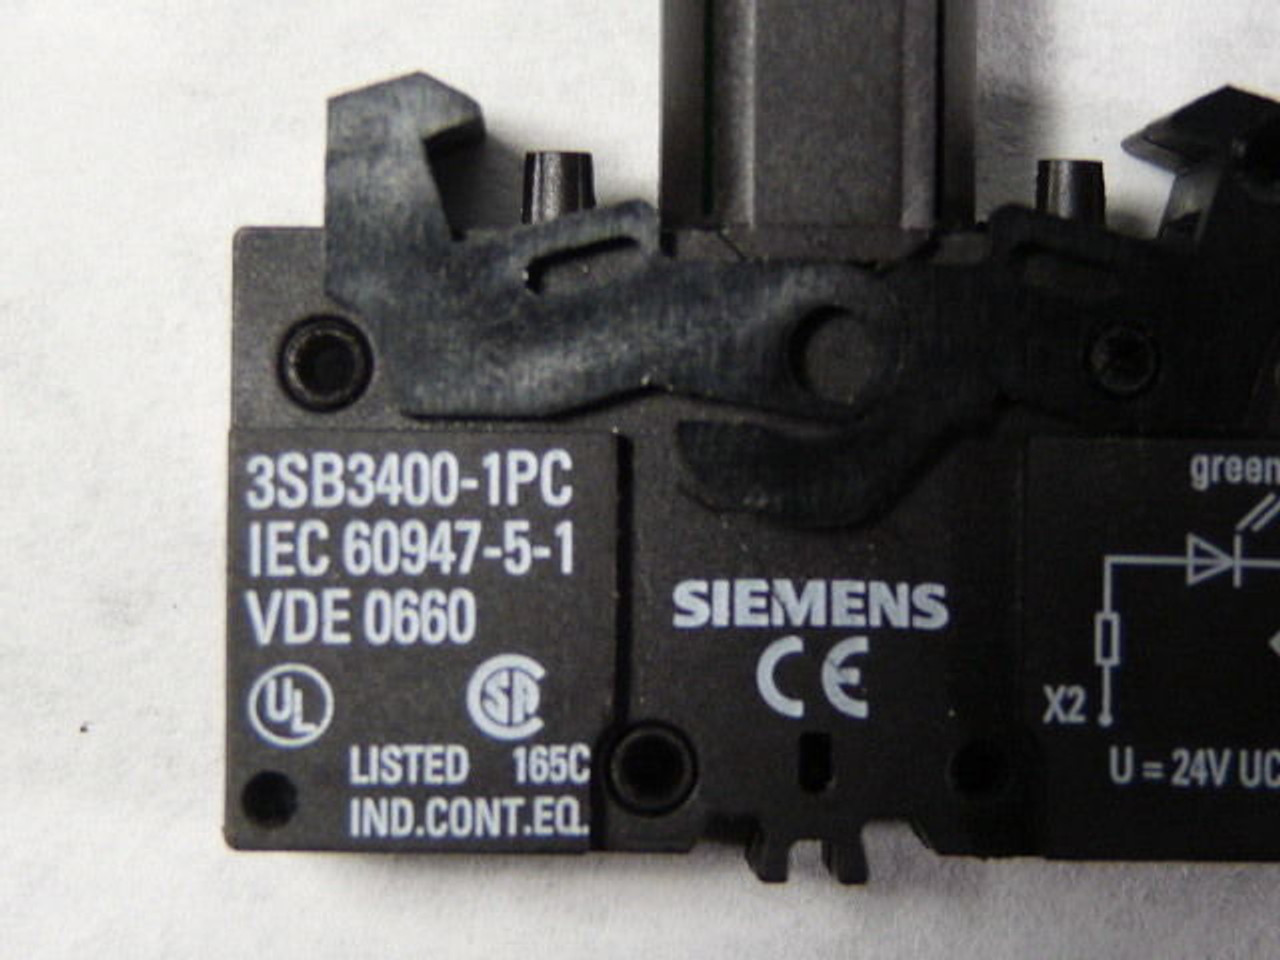 Siemens 3SB3400-1PC Integrated LED Lamp Holder - Green 24VDC USED